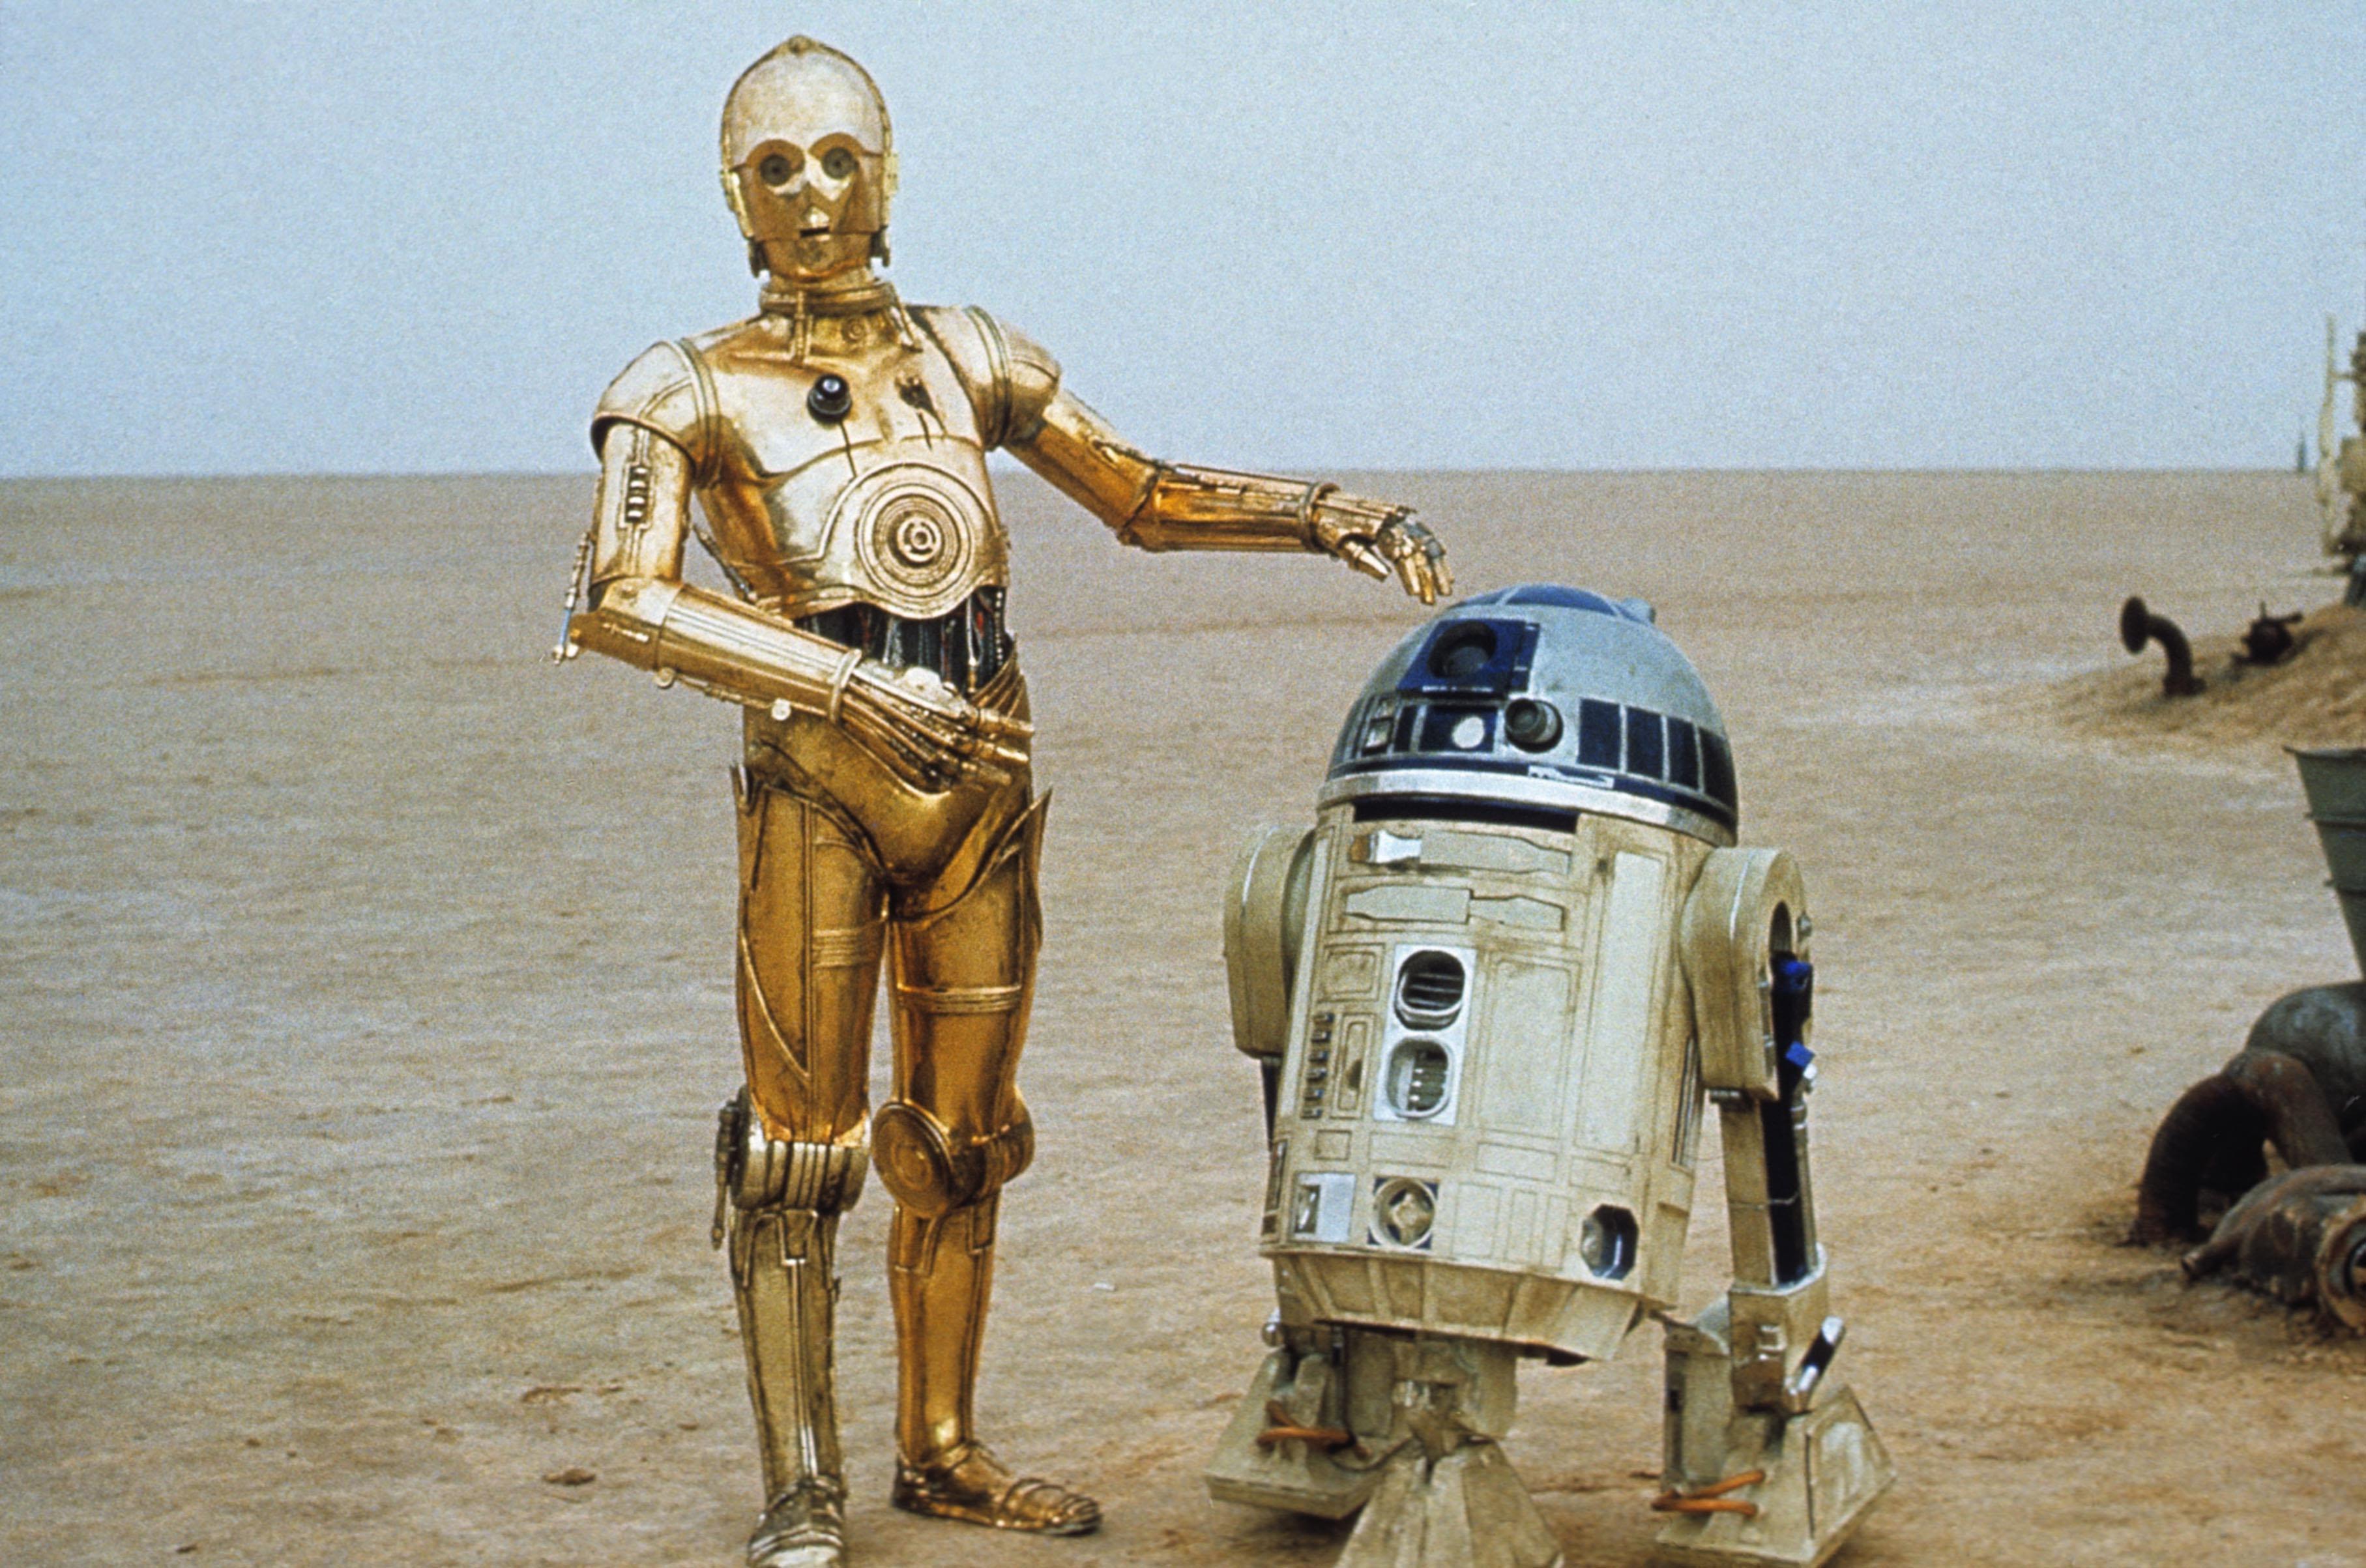 Image du film "Star Wars Episode IV - A New Hope" avec R2-D2 et son fidèle compagnon C-3PO. [Lucasfilm/20th Century Fox/The Kobal Collection]